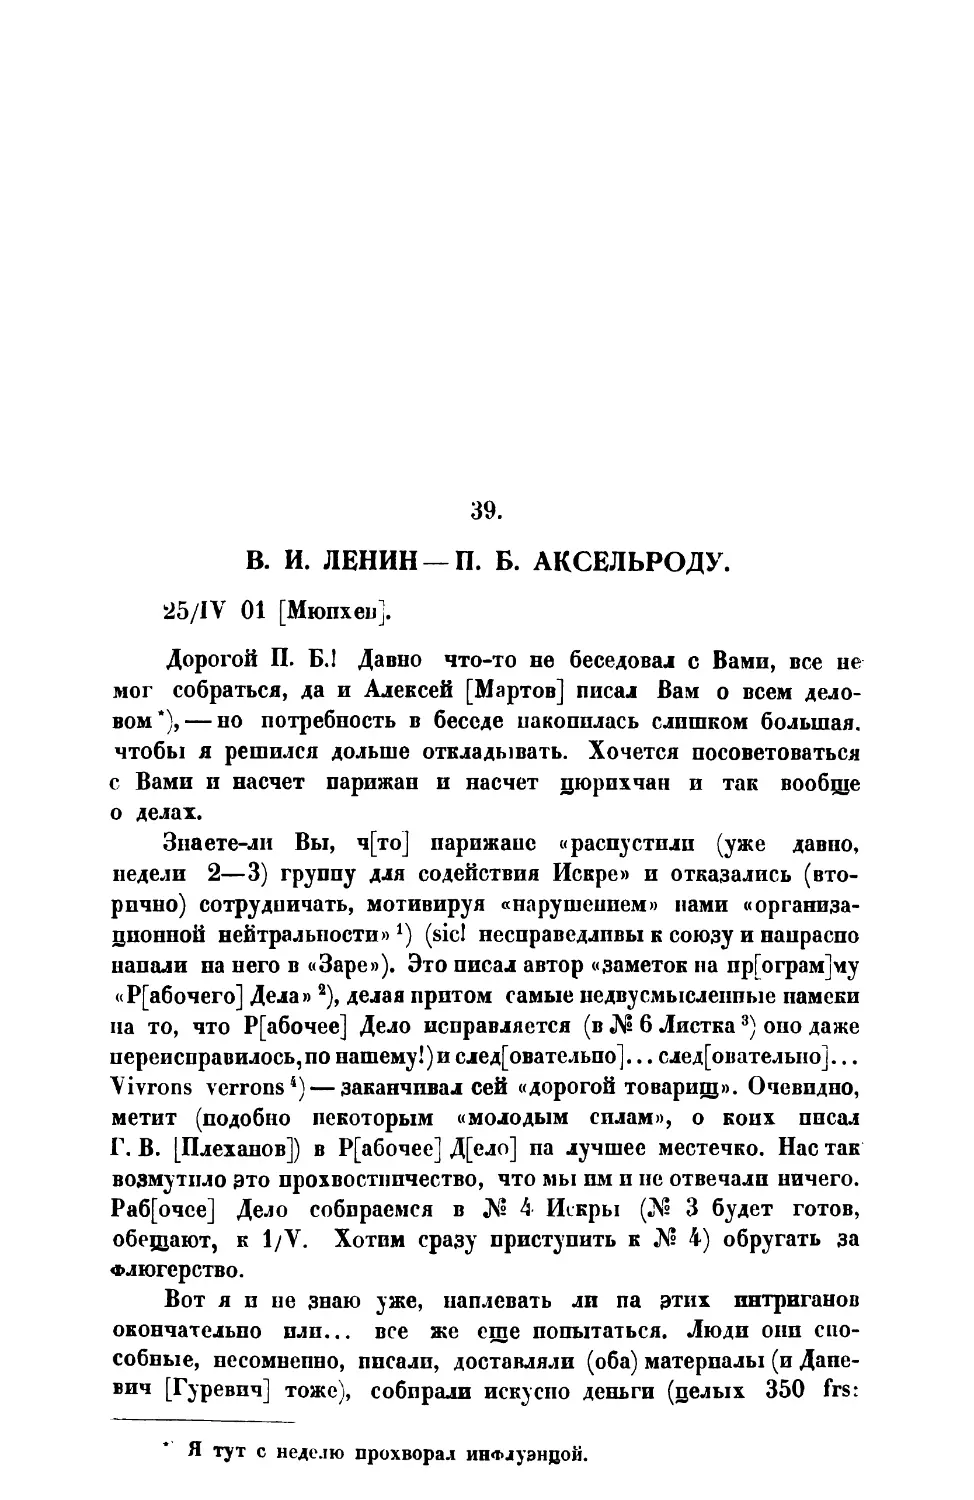 39. В. И. Ленин. — Письмо П. Б. Аксельроду от 25 IV 1901 г.